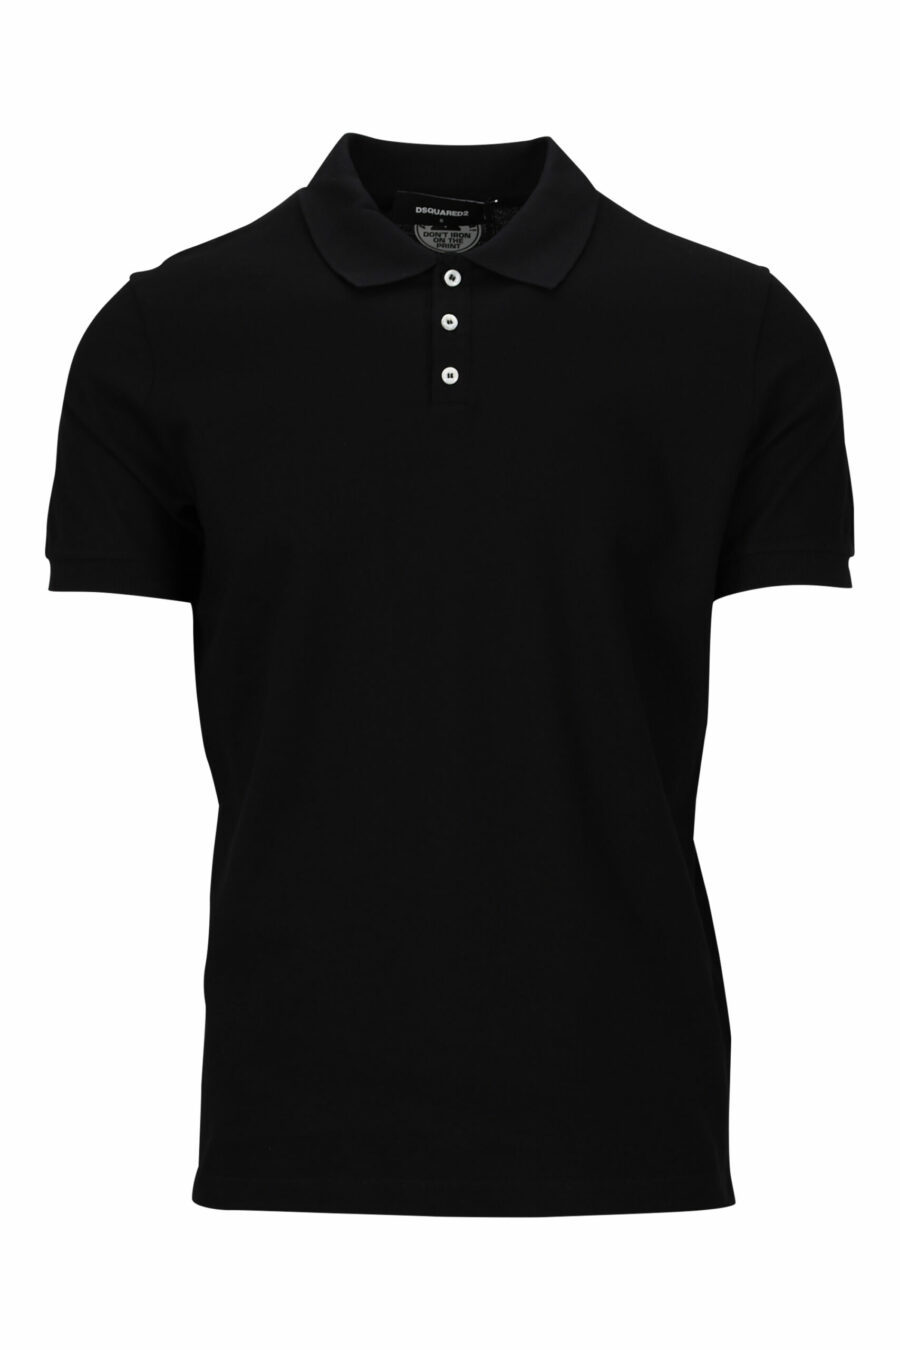 Schwarzes "Tennis Fit" Poloshirt mit "Icon" Logo auf dem Rücken - 8054148117191 skaliert